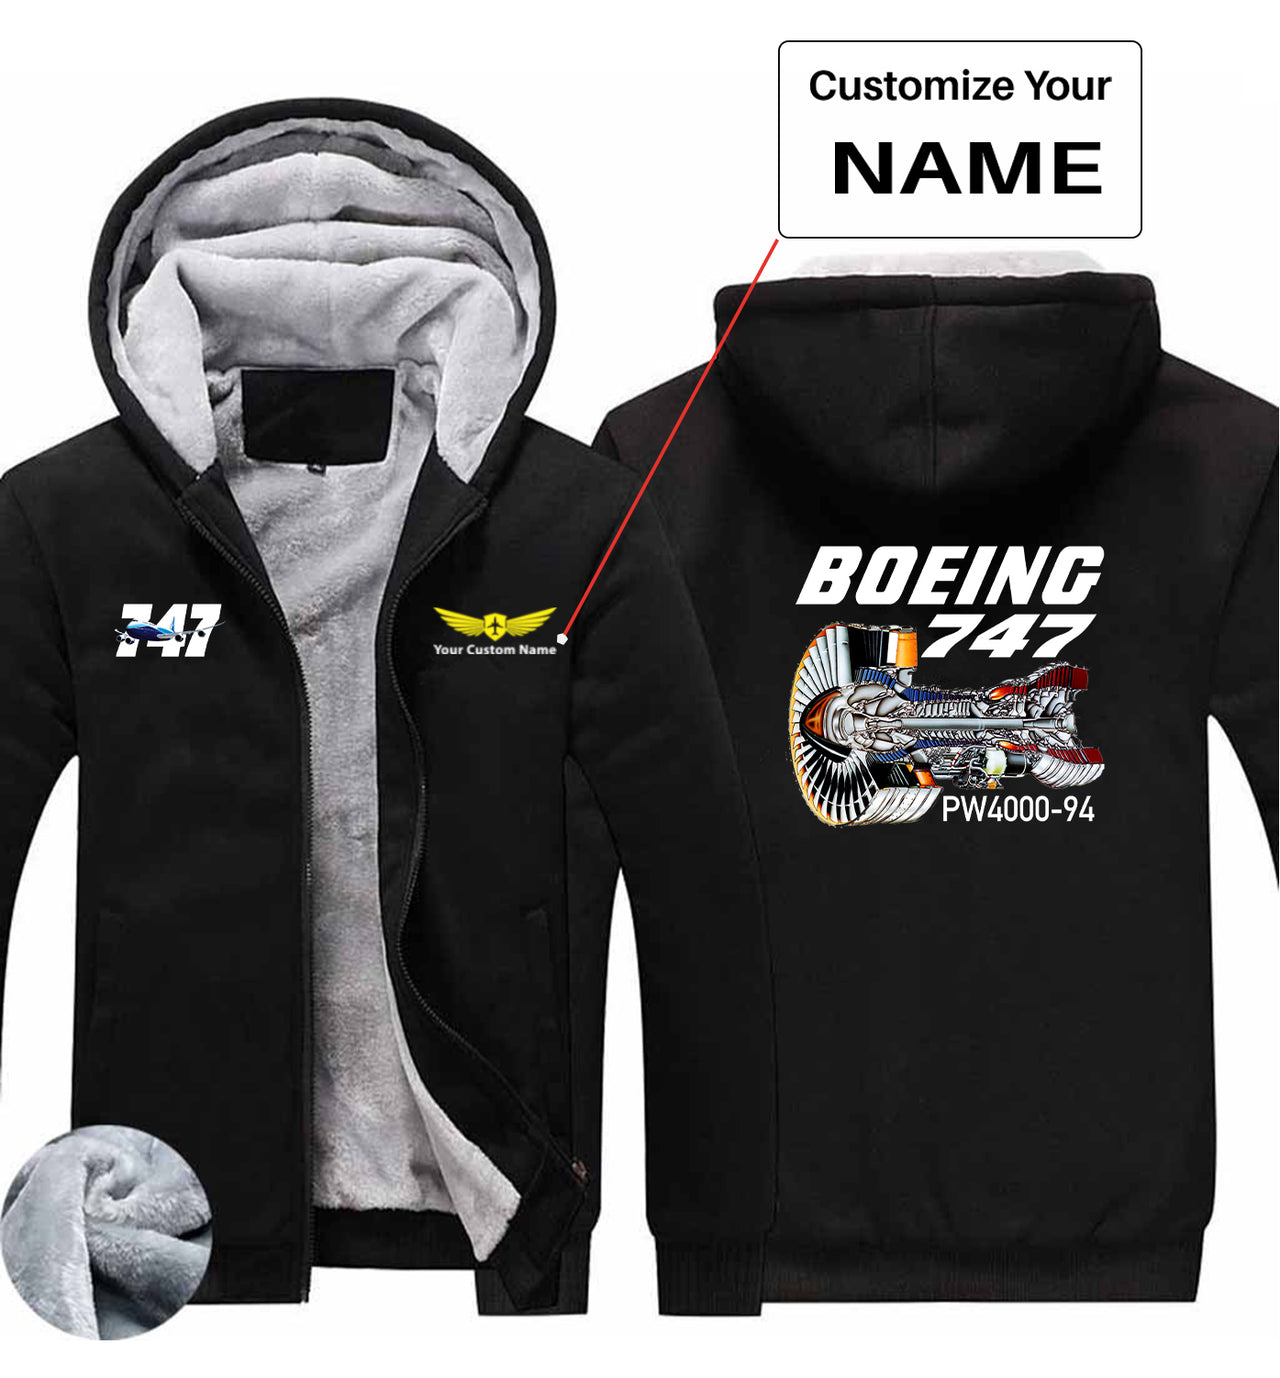 Boeing 747 & PW4000-94 Engine Designed Zipped Sweatshirts